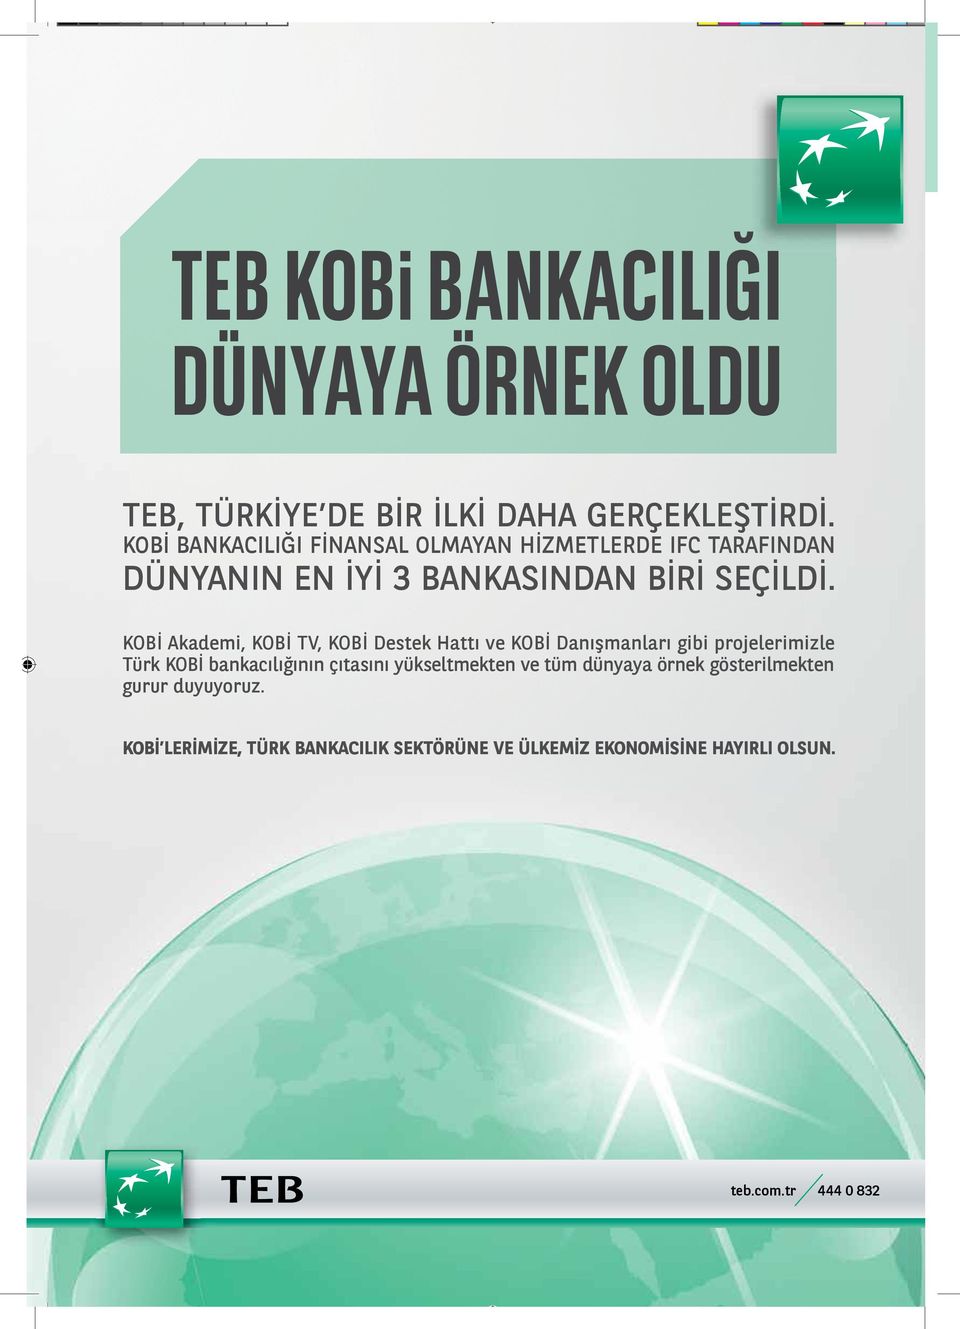 KOBİ Akademi, KOBİ TV, KOBİ Destek Hattı ve KOBİ Danışmanları gibi projelerimizle Türk KOBİ bankacılığının çıtasını